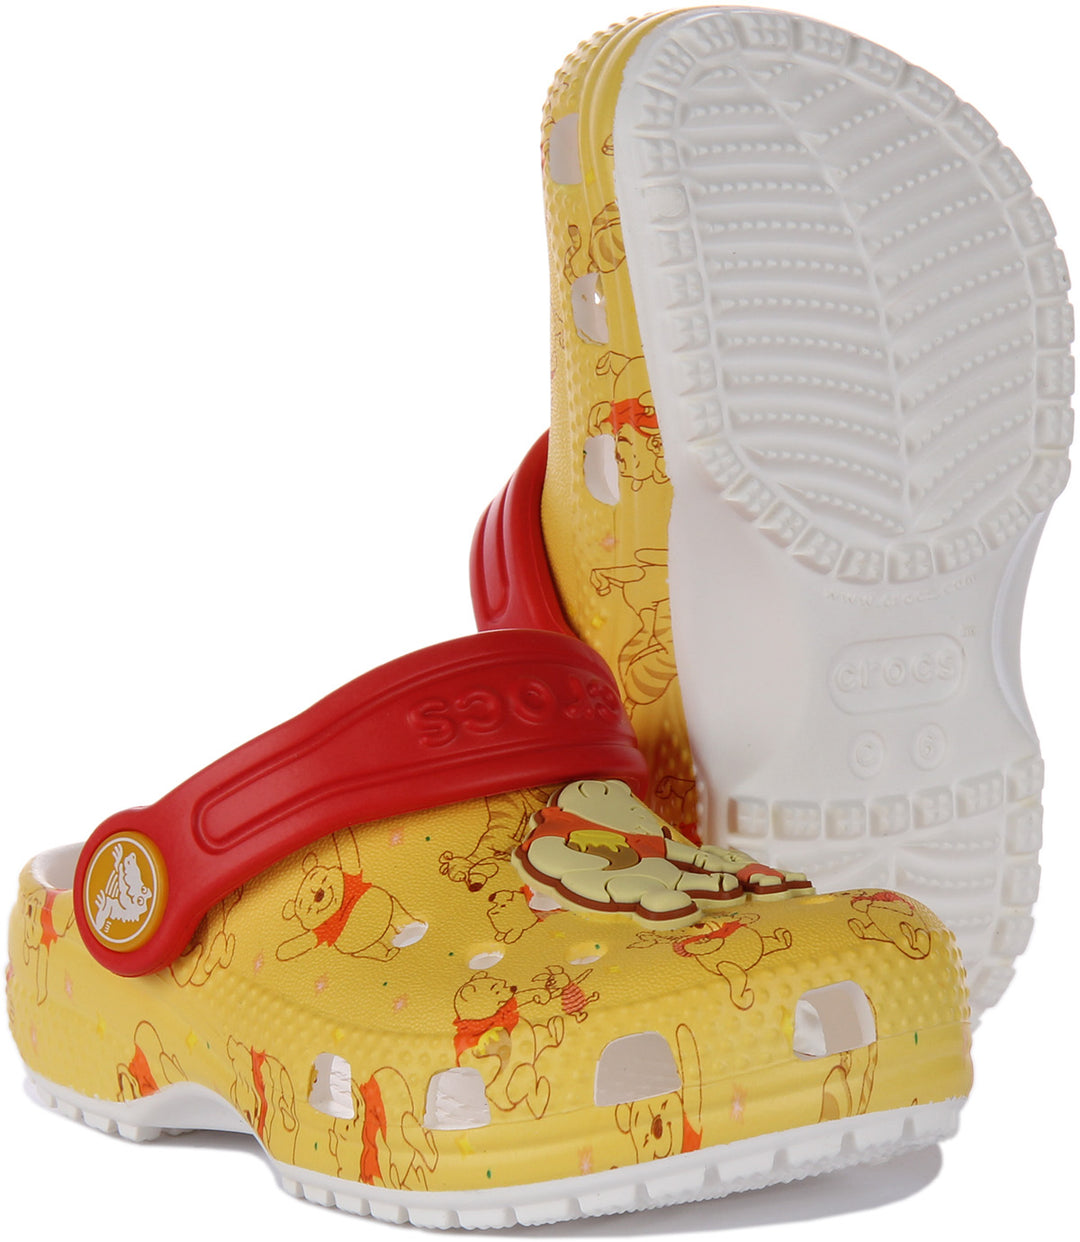 Crocs Classic Sandalo zoccolo Winnie The Pooh per bambino in giallo rosso